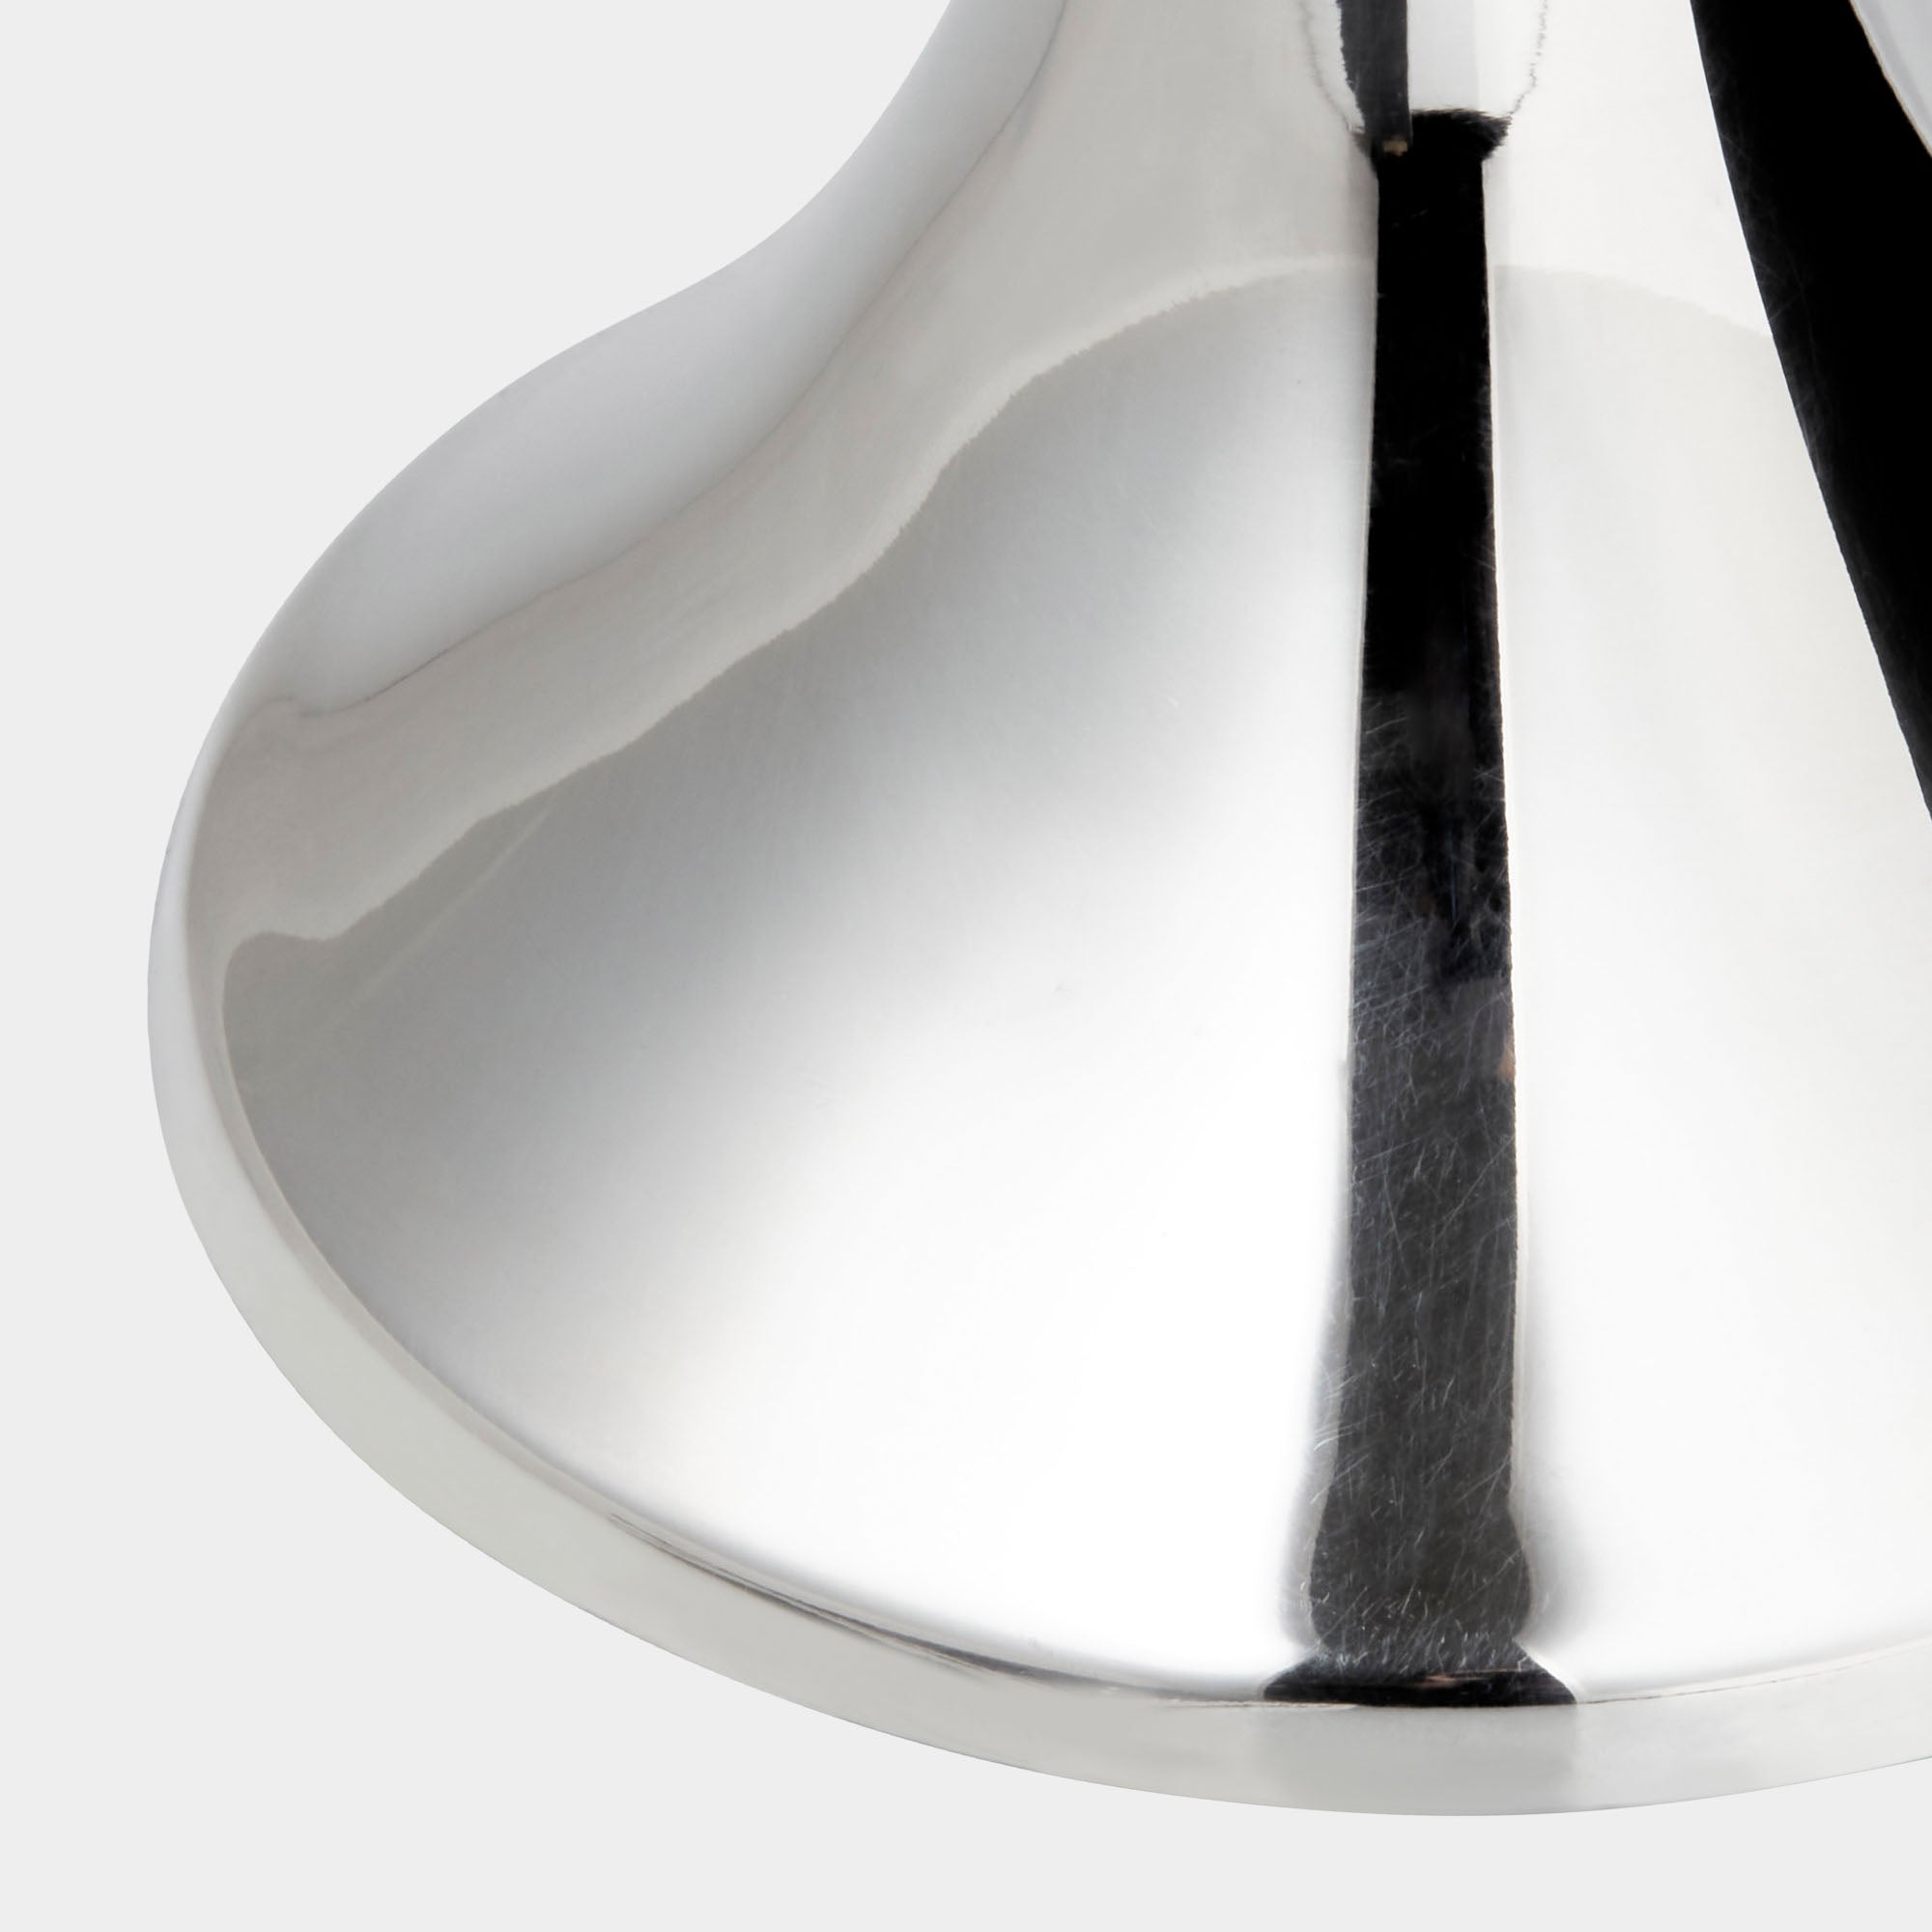 Italienischer Design-Leuchter aus 925er Silber mit Filzschutz - 10cm Höhe - Bild 3